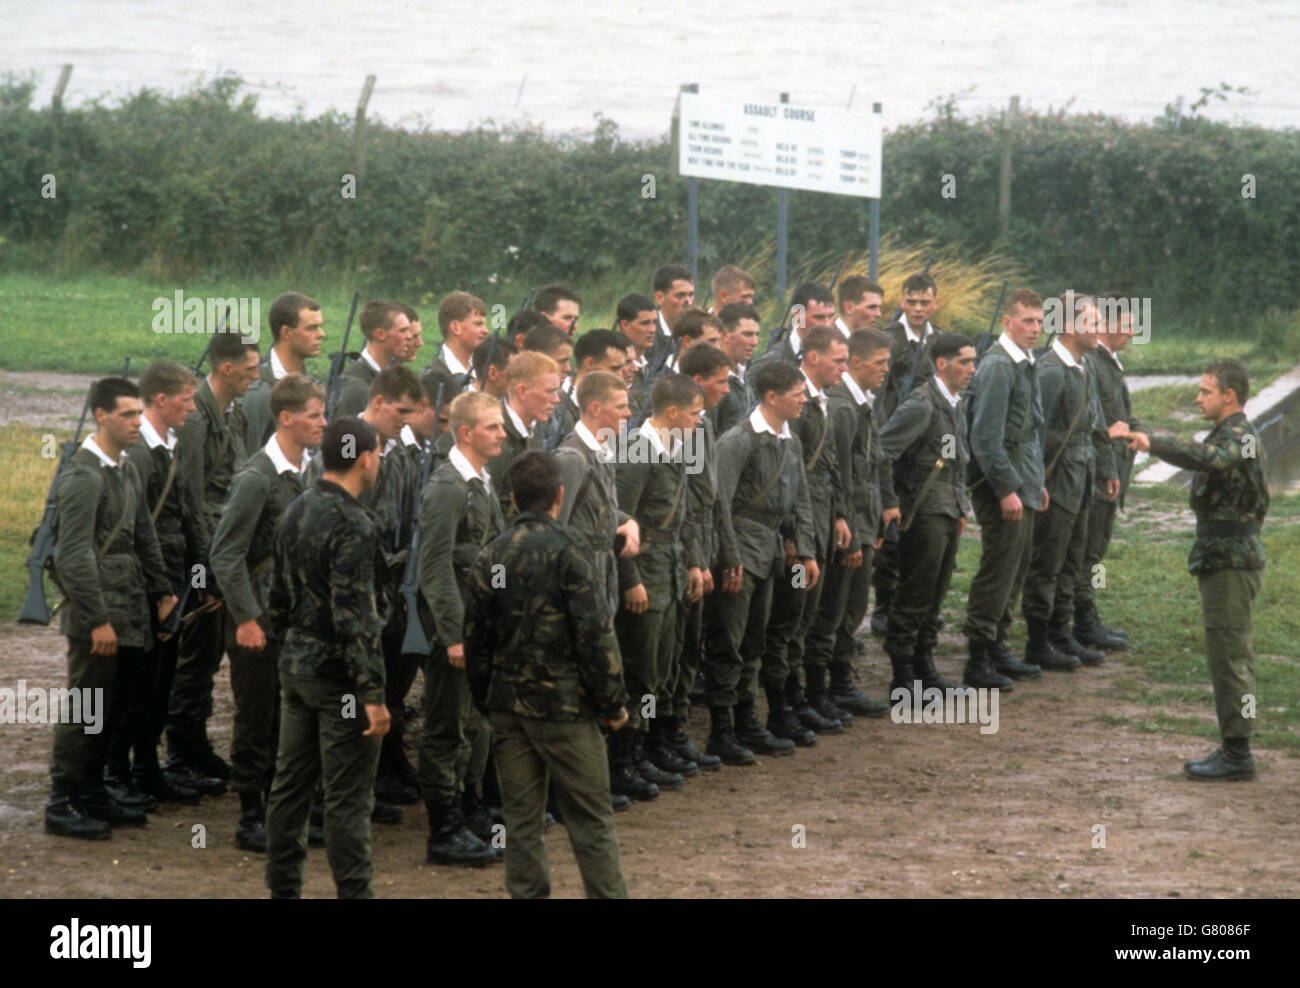 Junger Offizier rekrutiert Paraden im Royal Marine Commando Training Center in Lympstone, Devon. Der 22-jährige Prinz Edward wird im nächsten Monat in Vollzeit mit der körperlichen und geistigen Ausbildung als Royal Marine Officer beginnen. Stockfoto